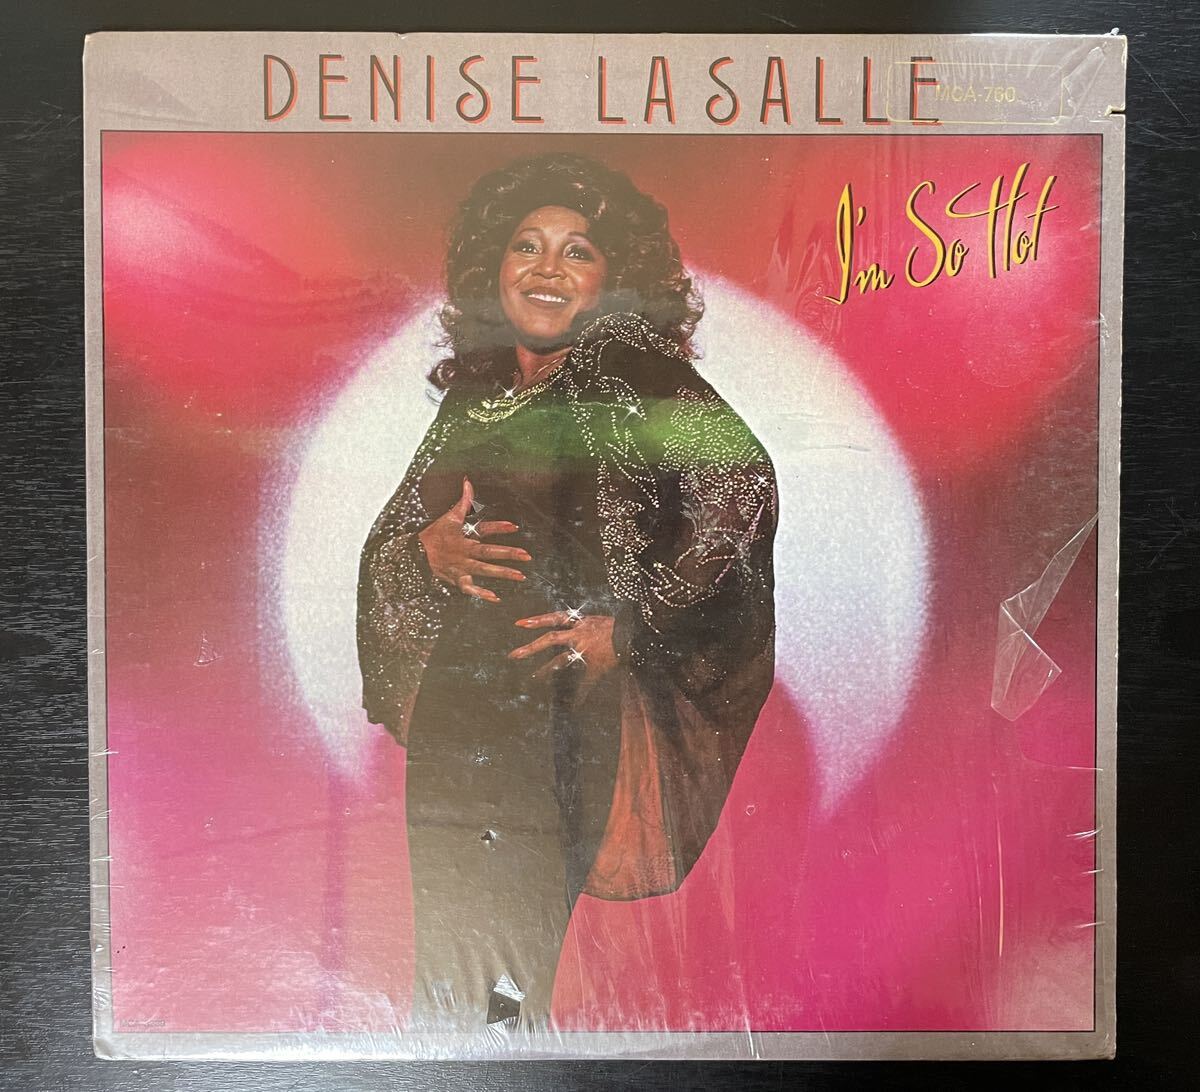 DENISE LaSALLE / I'M SO HOT 中古盤アルバムの画像1